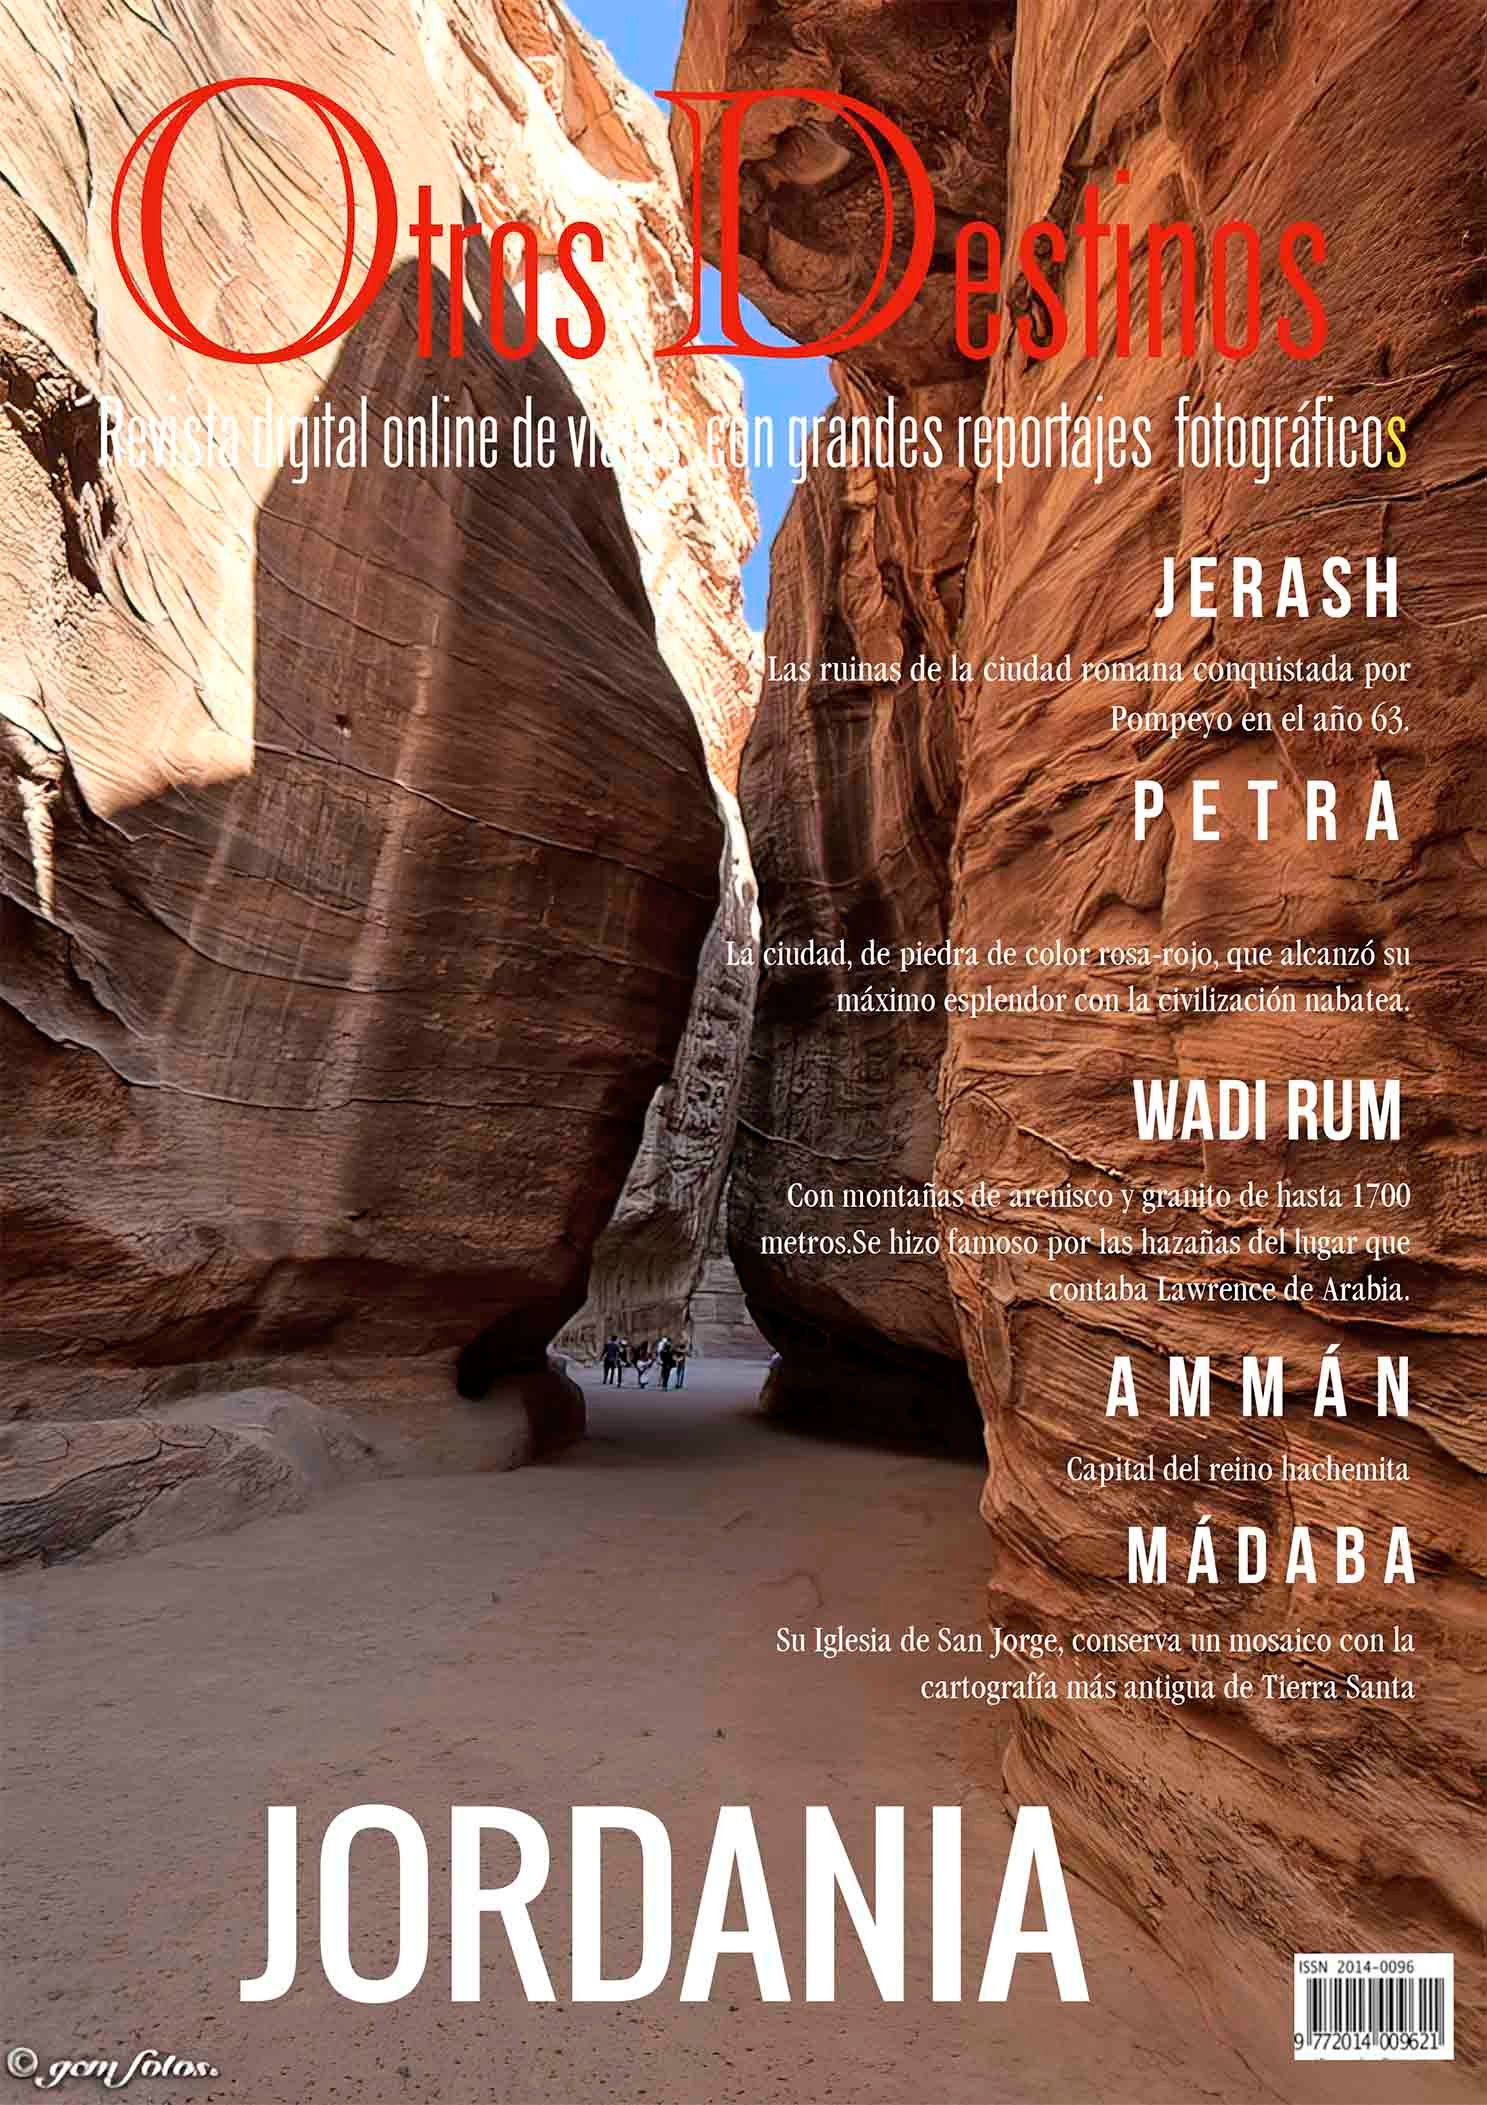 Jordania: Petra,Wadi Rum, Ammán, Mádaba, Jerash